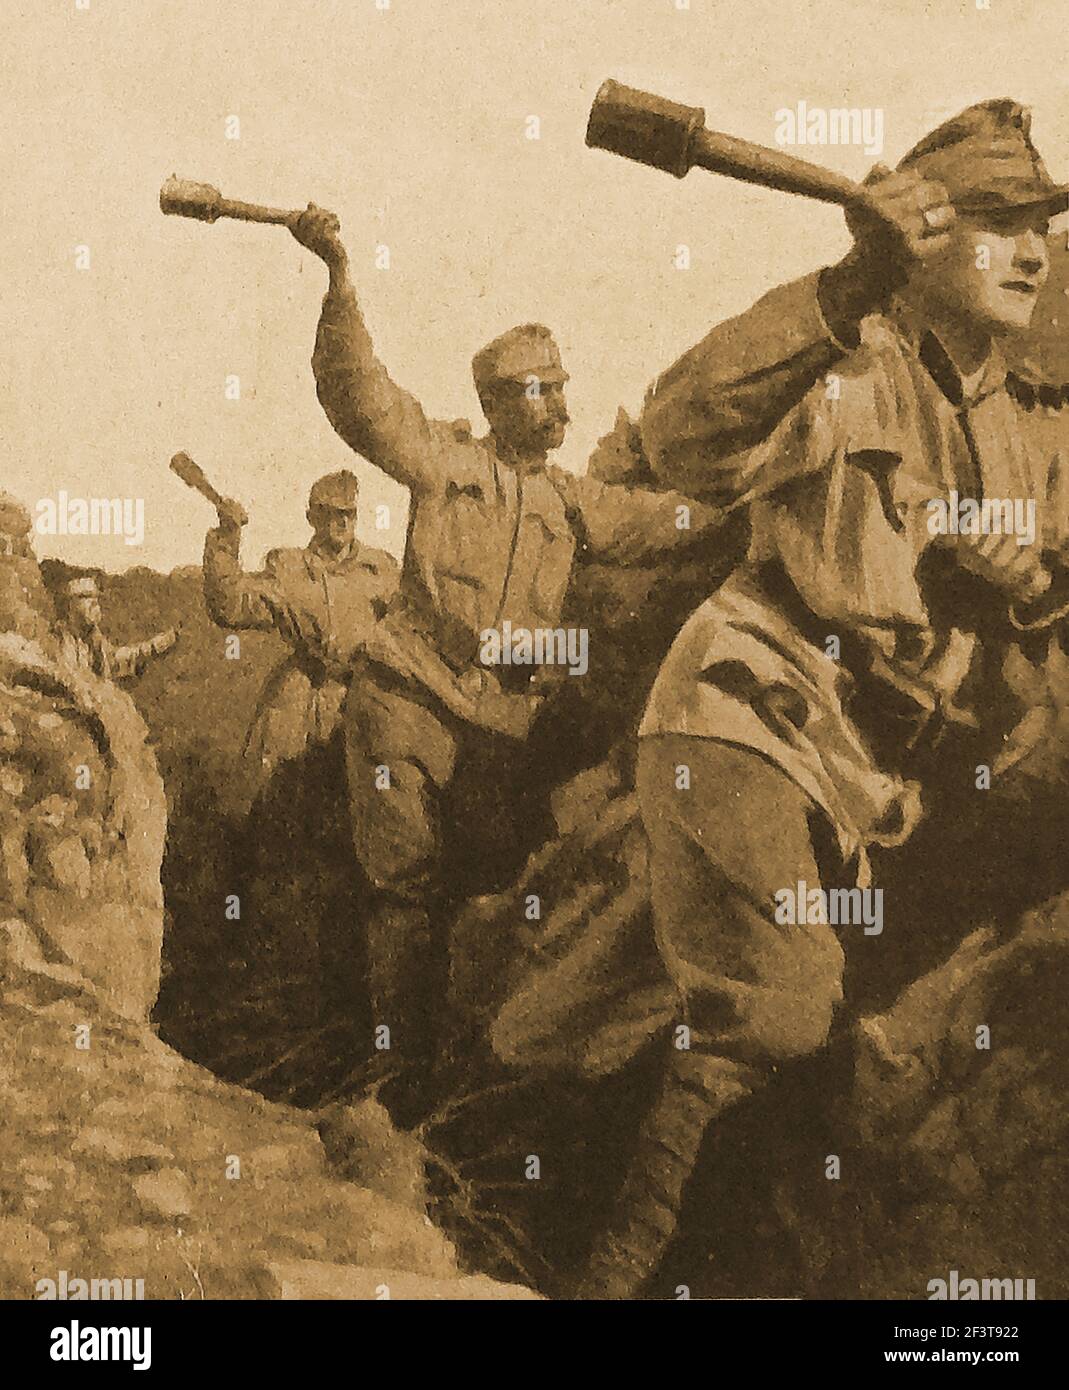 WWI - Trench Warfare - soldati austriaci che lanciano granate fatte a mano a partire da barattoli di manzo farciti di esplosivi nelle trincee italiane. Foto Stock